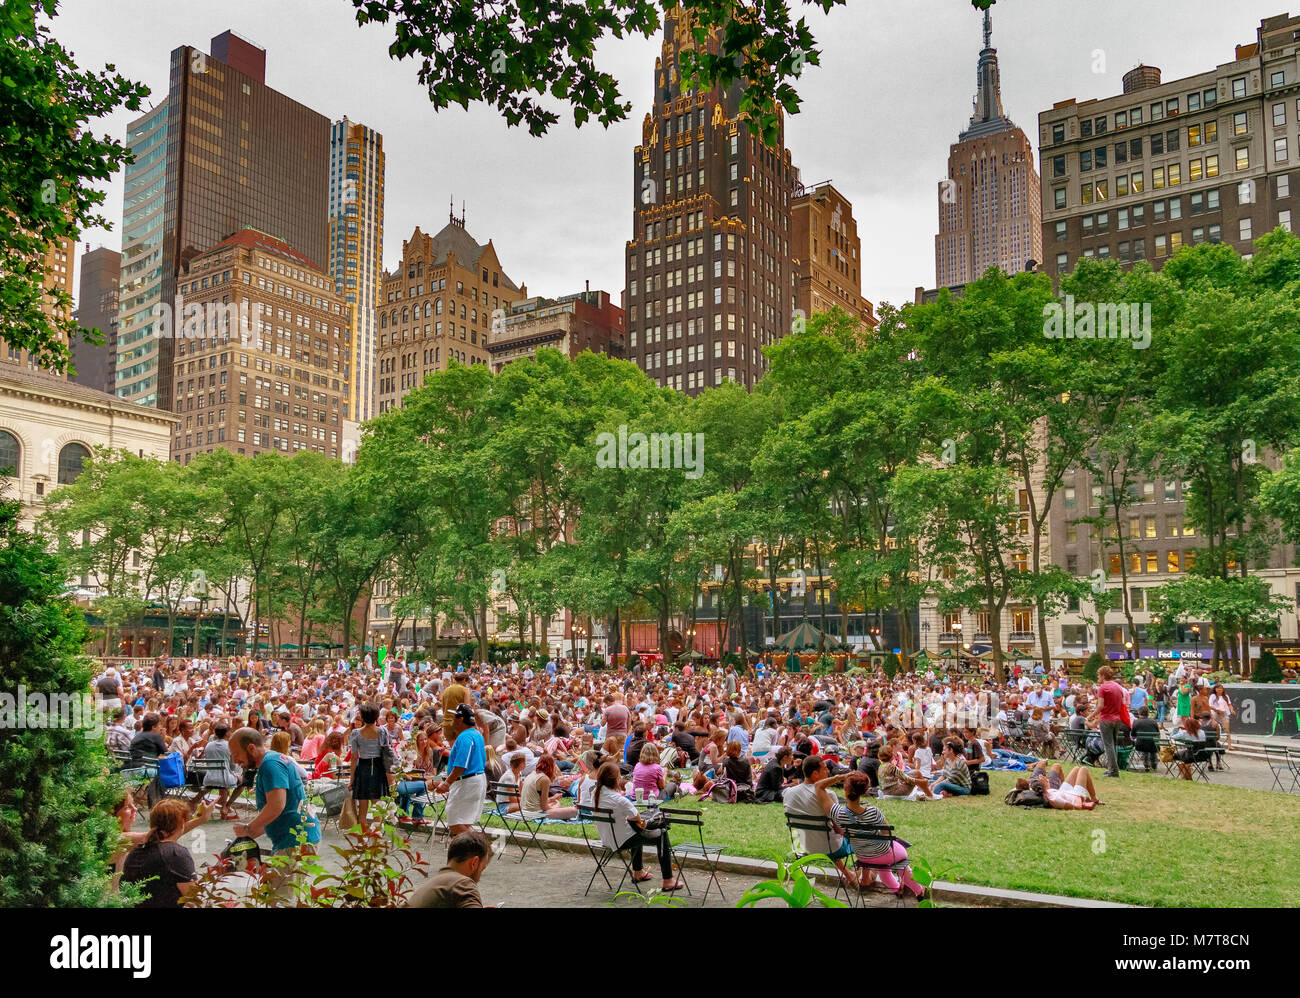 Des foules se sont rassemblées sur la pelouse de Bryant Park, Manhattan, pour le Bryant Park film Festival, un événement de projection de film en plein air à New York Banque D'Images